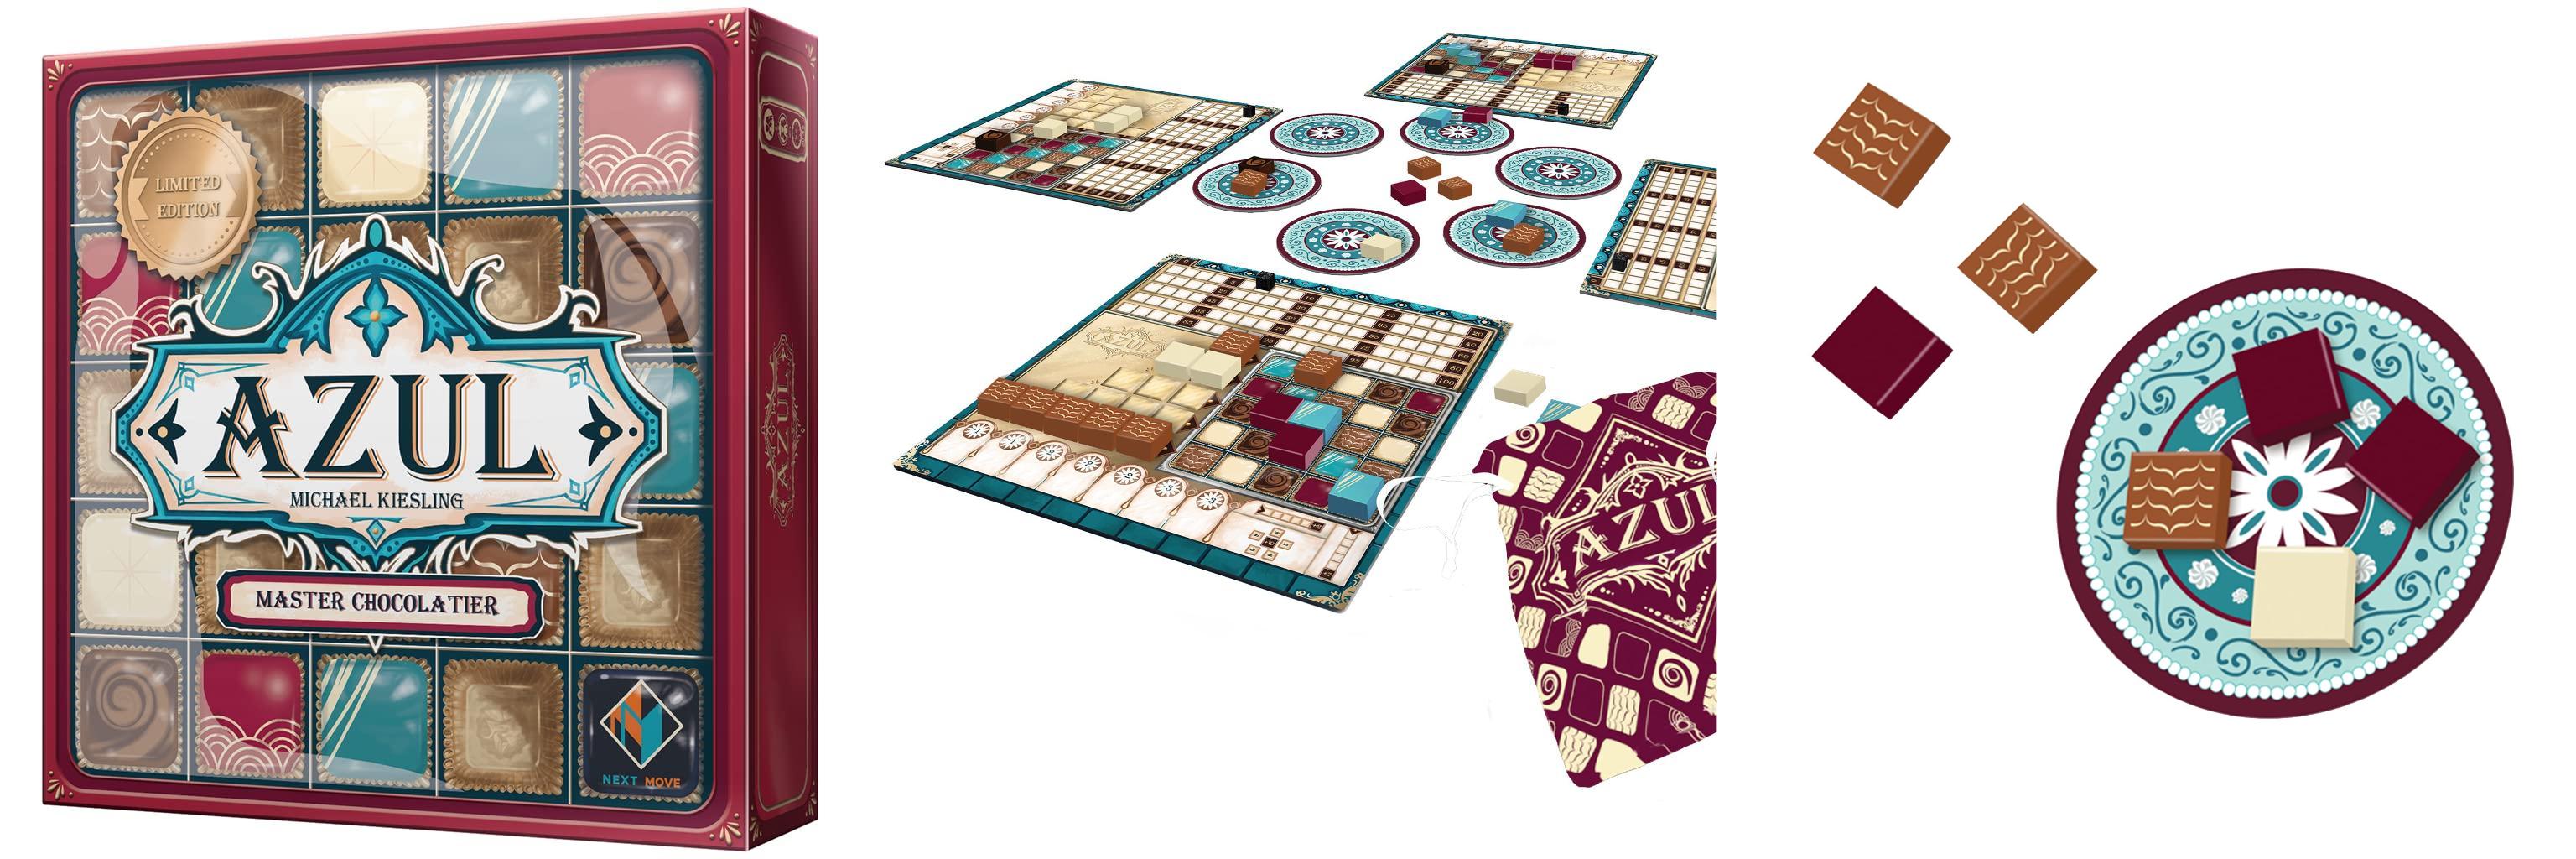 Descubre el increíble juego de mesa Azul Master Chocolatier - ¡Unboxing Now!